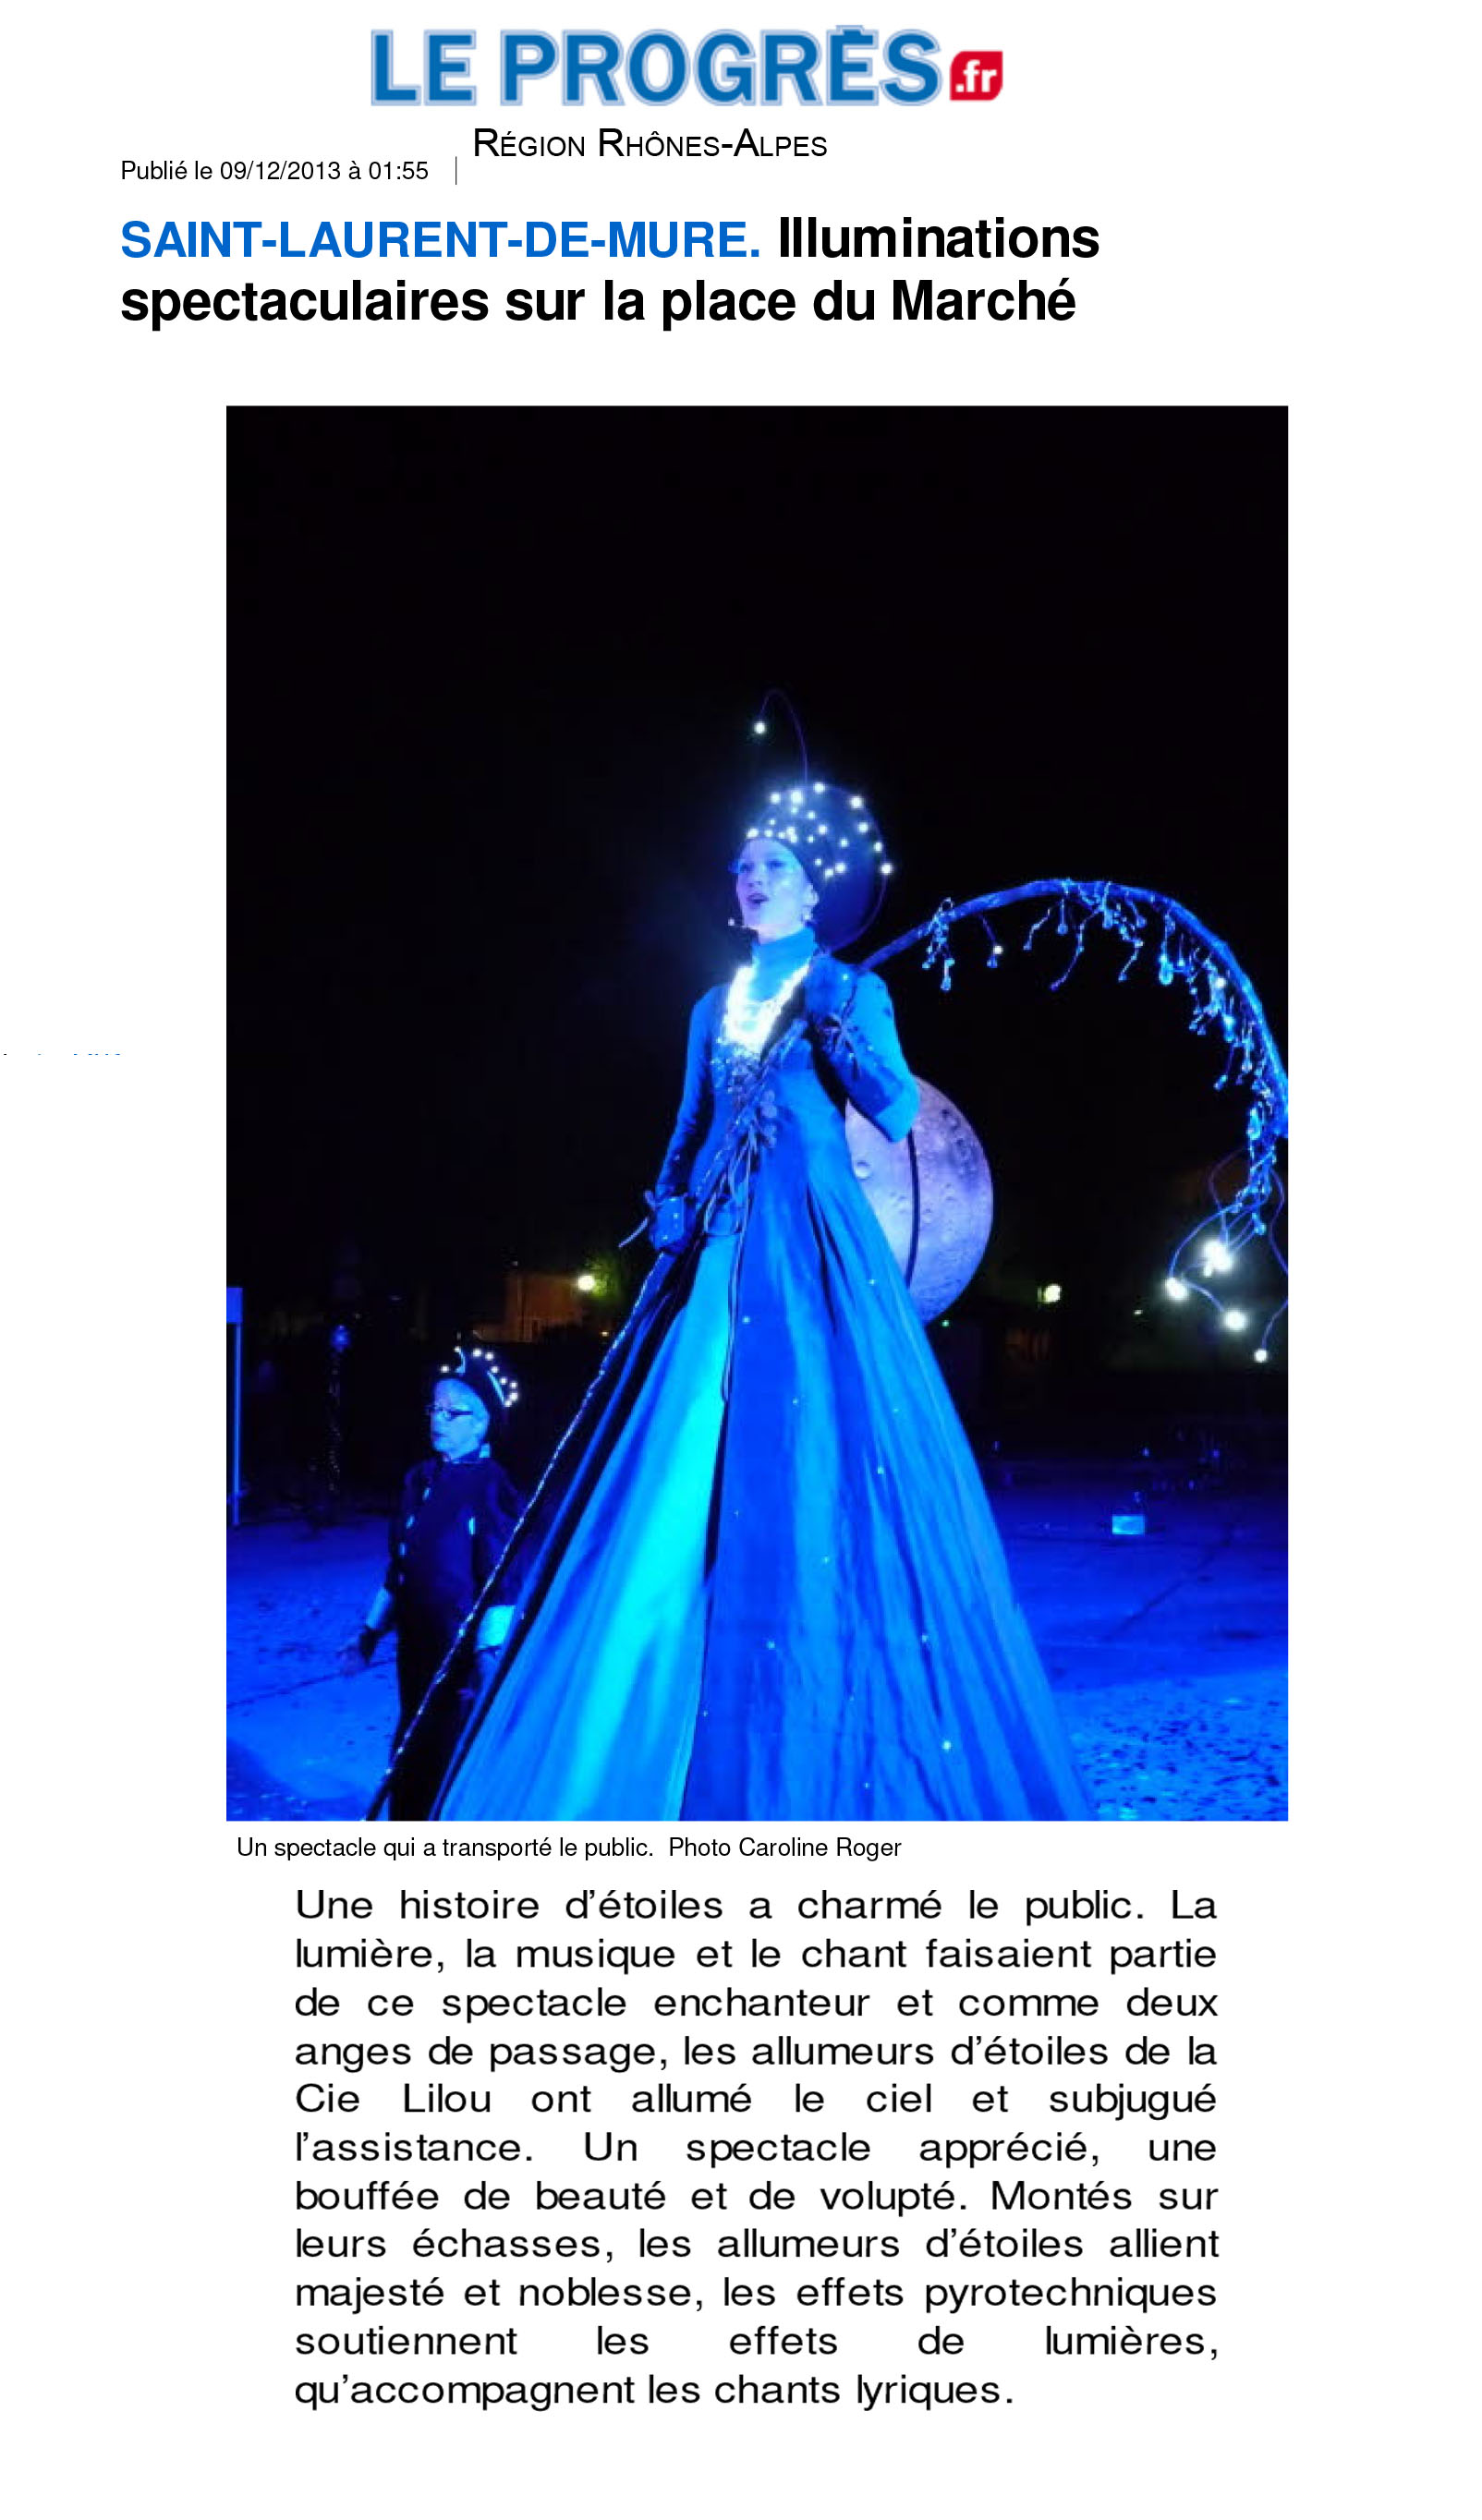 (Saint-Laurent-de-Mure | Illuminations spectaculaires sur la place du March351)